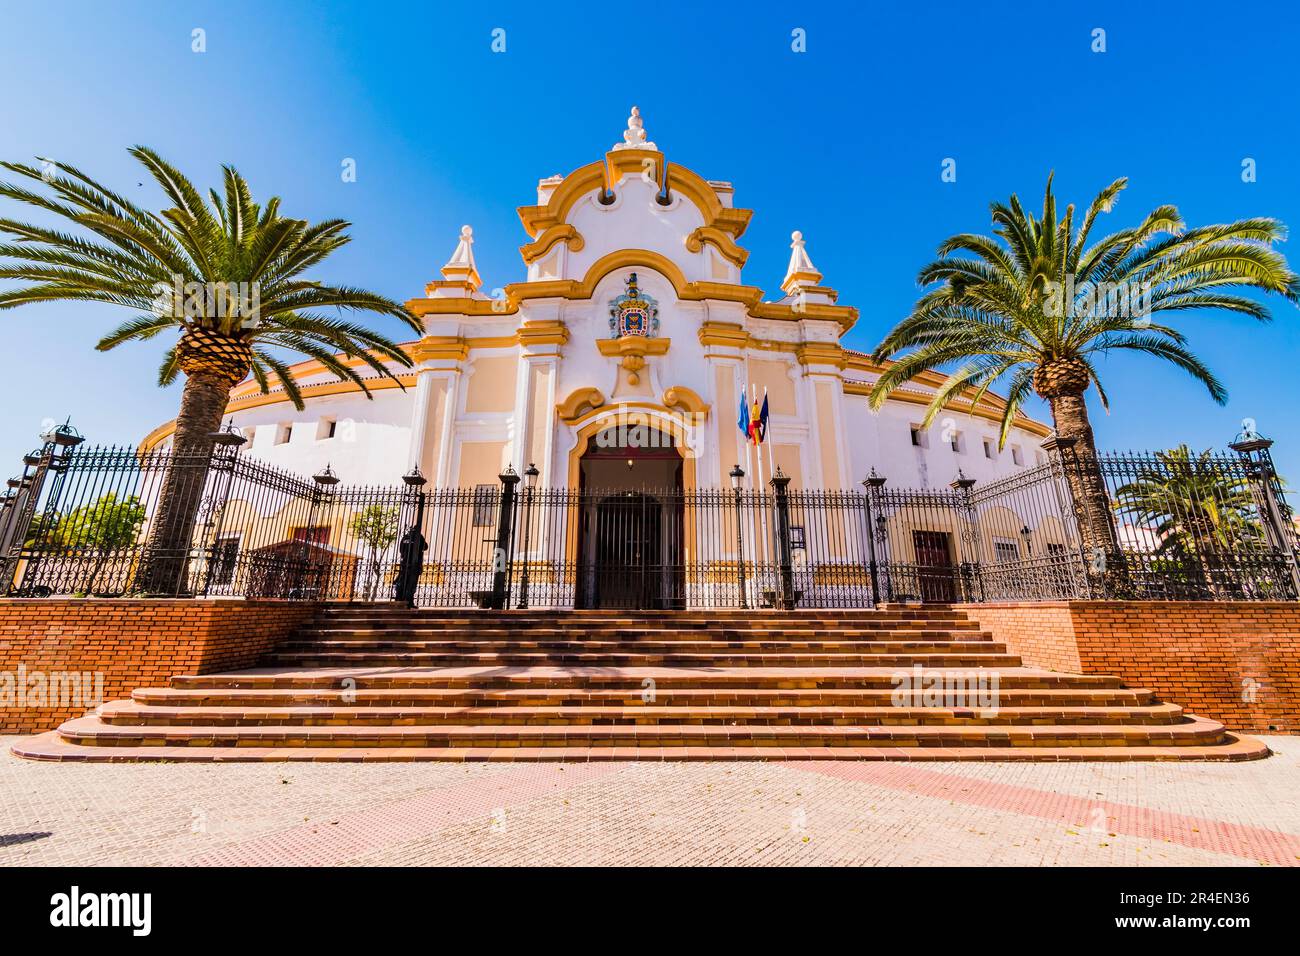 Die Stierkampfarena von Melilla, auch bekannt als die Moschee der Stierkämpfe, Mezquita del toreo. Es ist eine der neun Stierkampfarenen in Afrika und die einzige Stockfoto